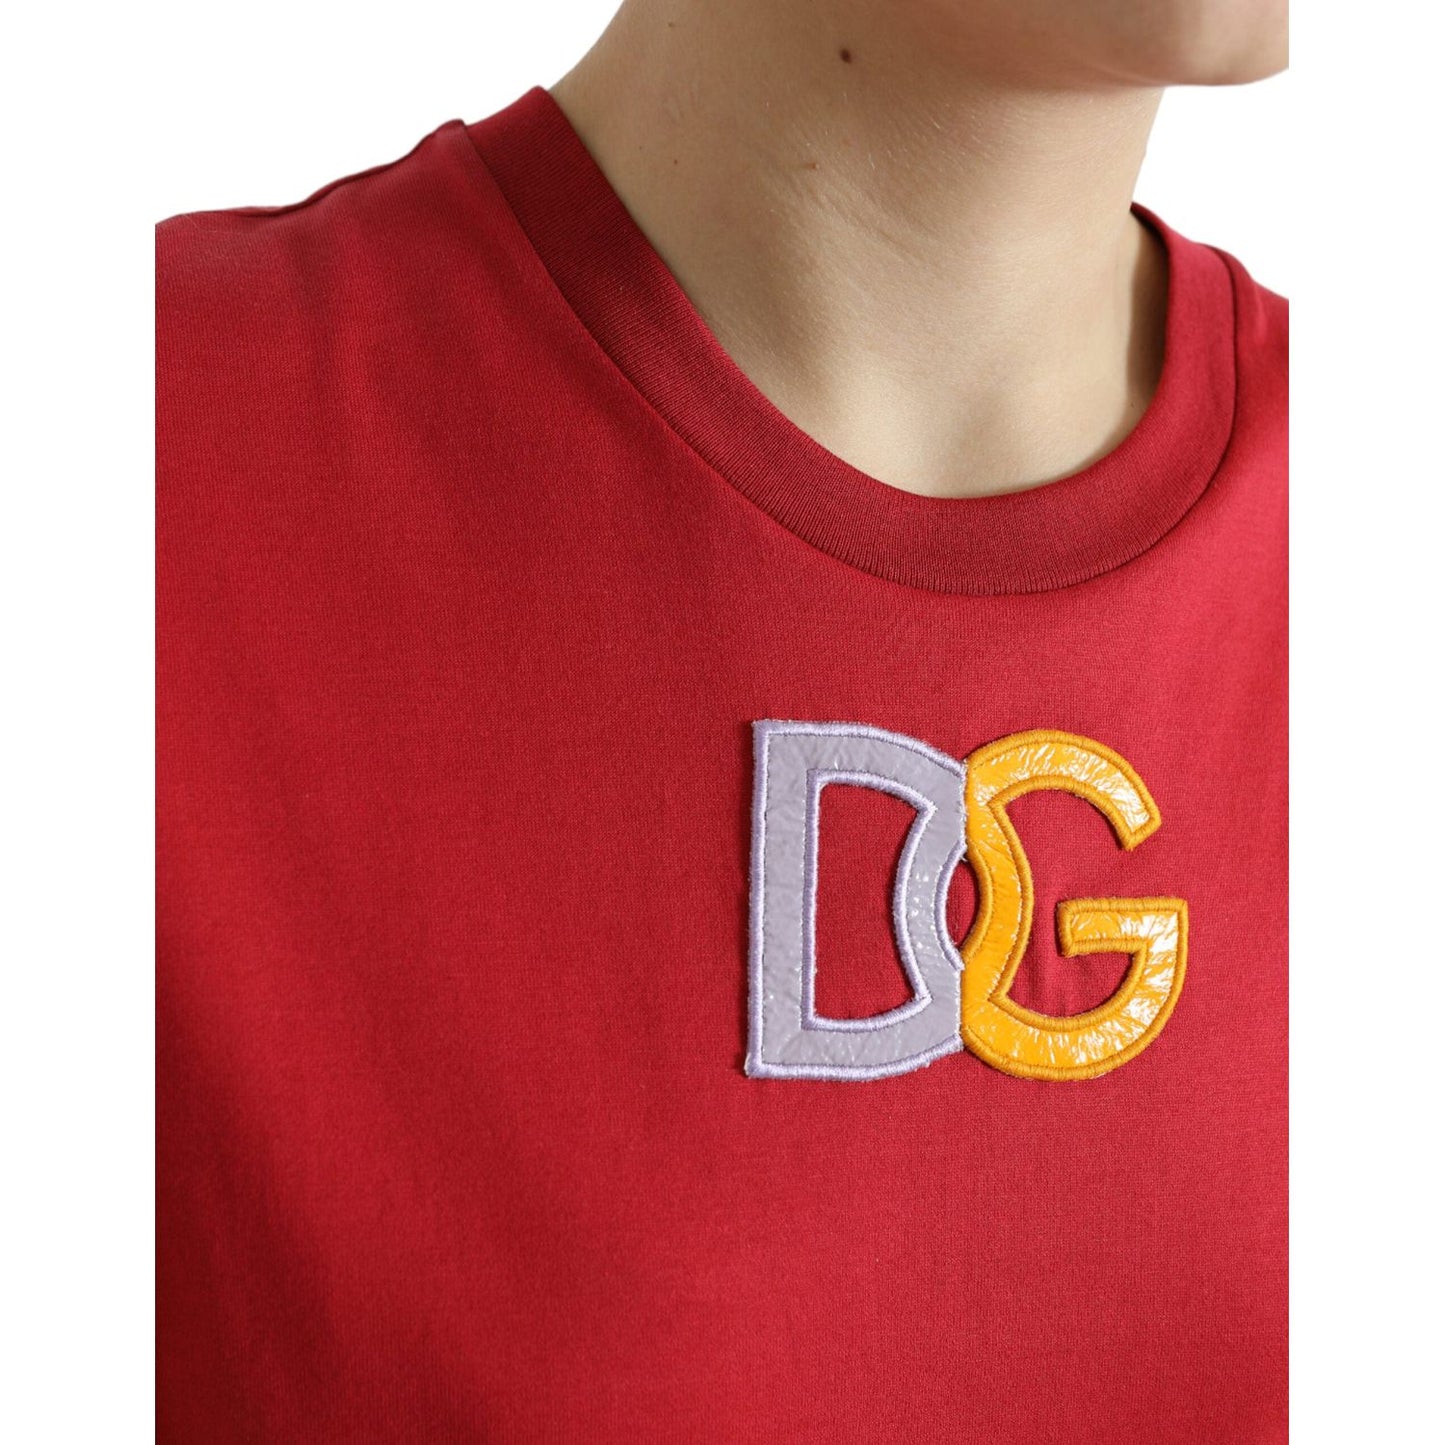 Dolce & Gabbana Elegant Red Cotton Crew Neck Tank Top red-cotton-dg-logo-crew-neck-tank-top-t-shirt